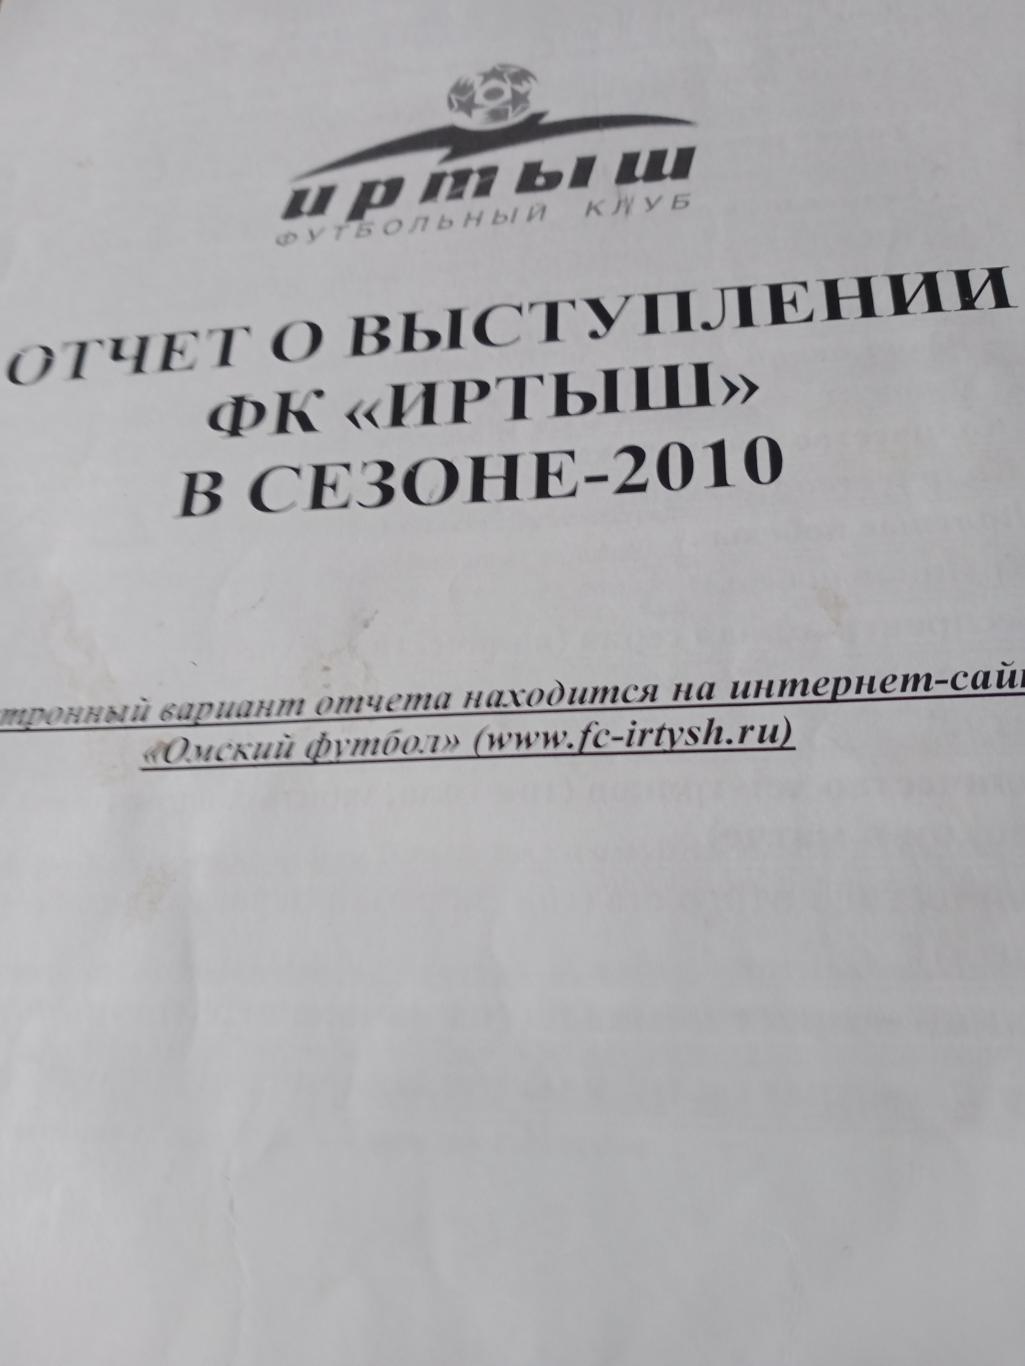 Отчет о выступлении ФК Иртыш Омск в 2010 году